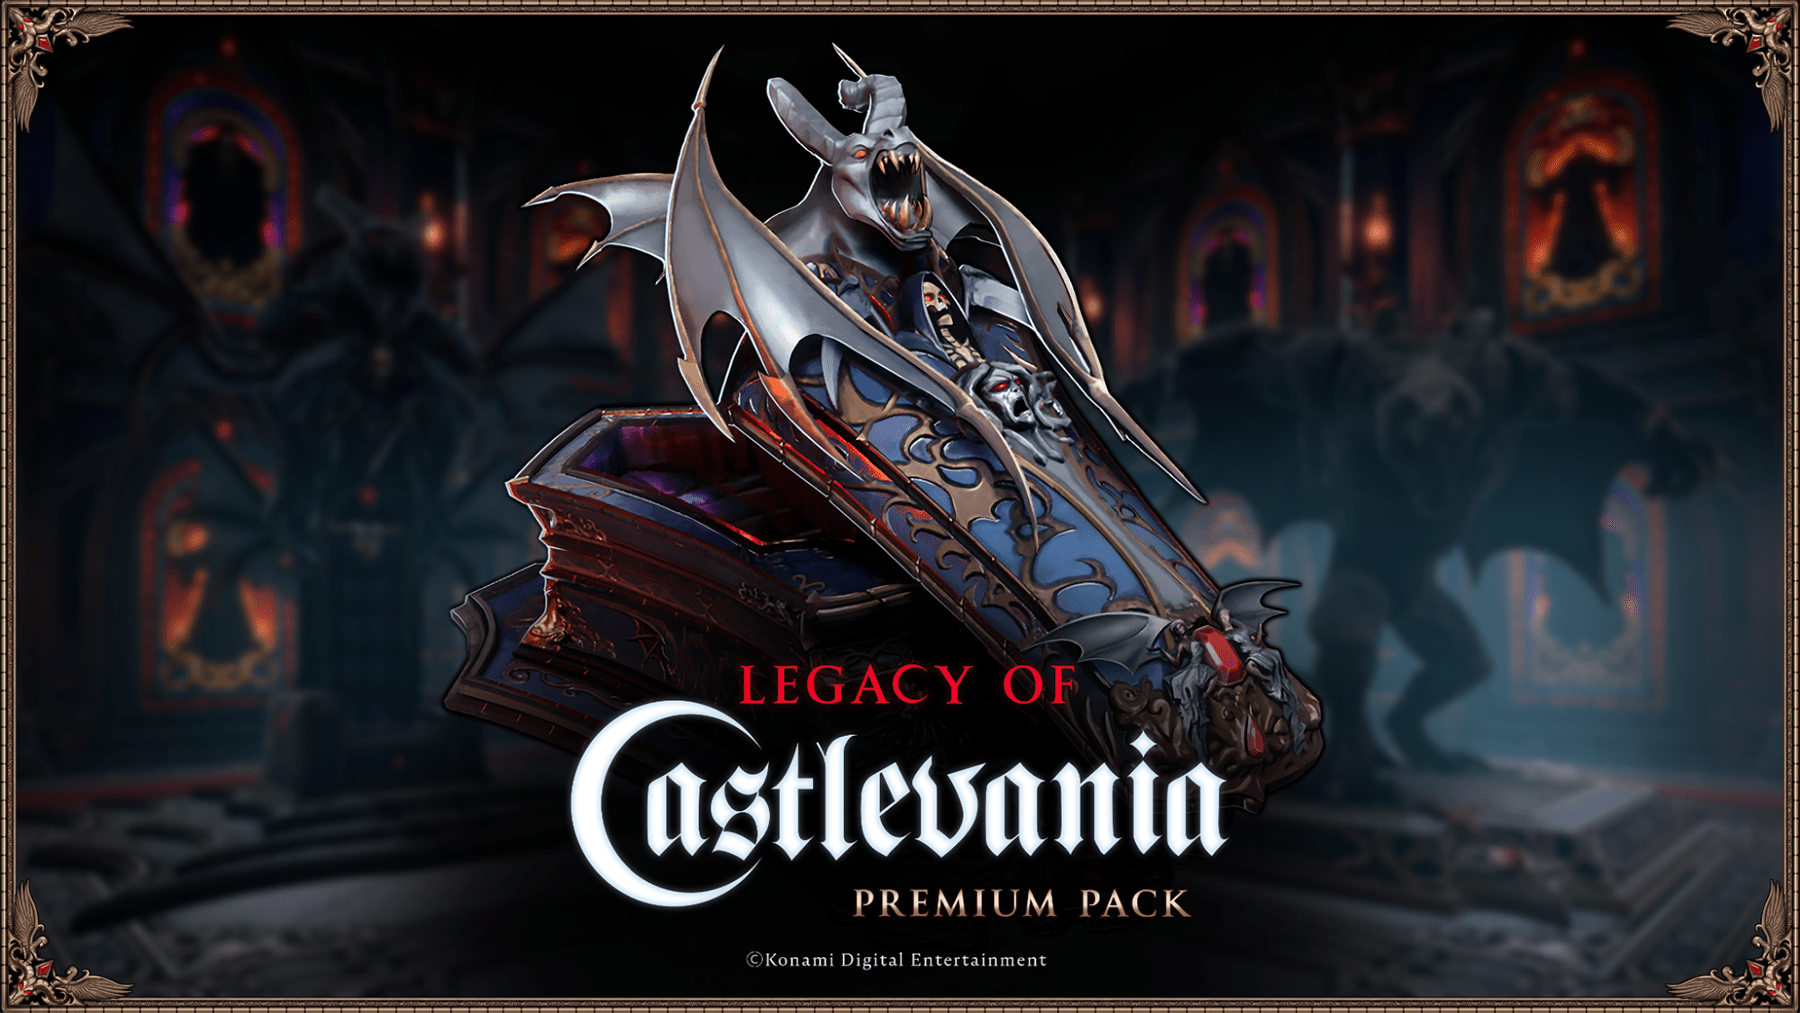 Lanseringen av samarbetet kring V Rising - Legacy of Castlevania kommer att äga rum den 8 maj